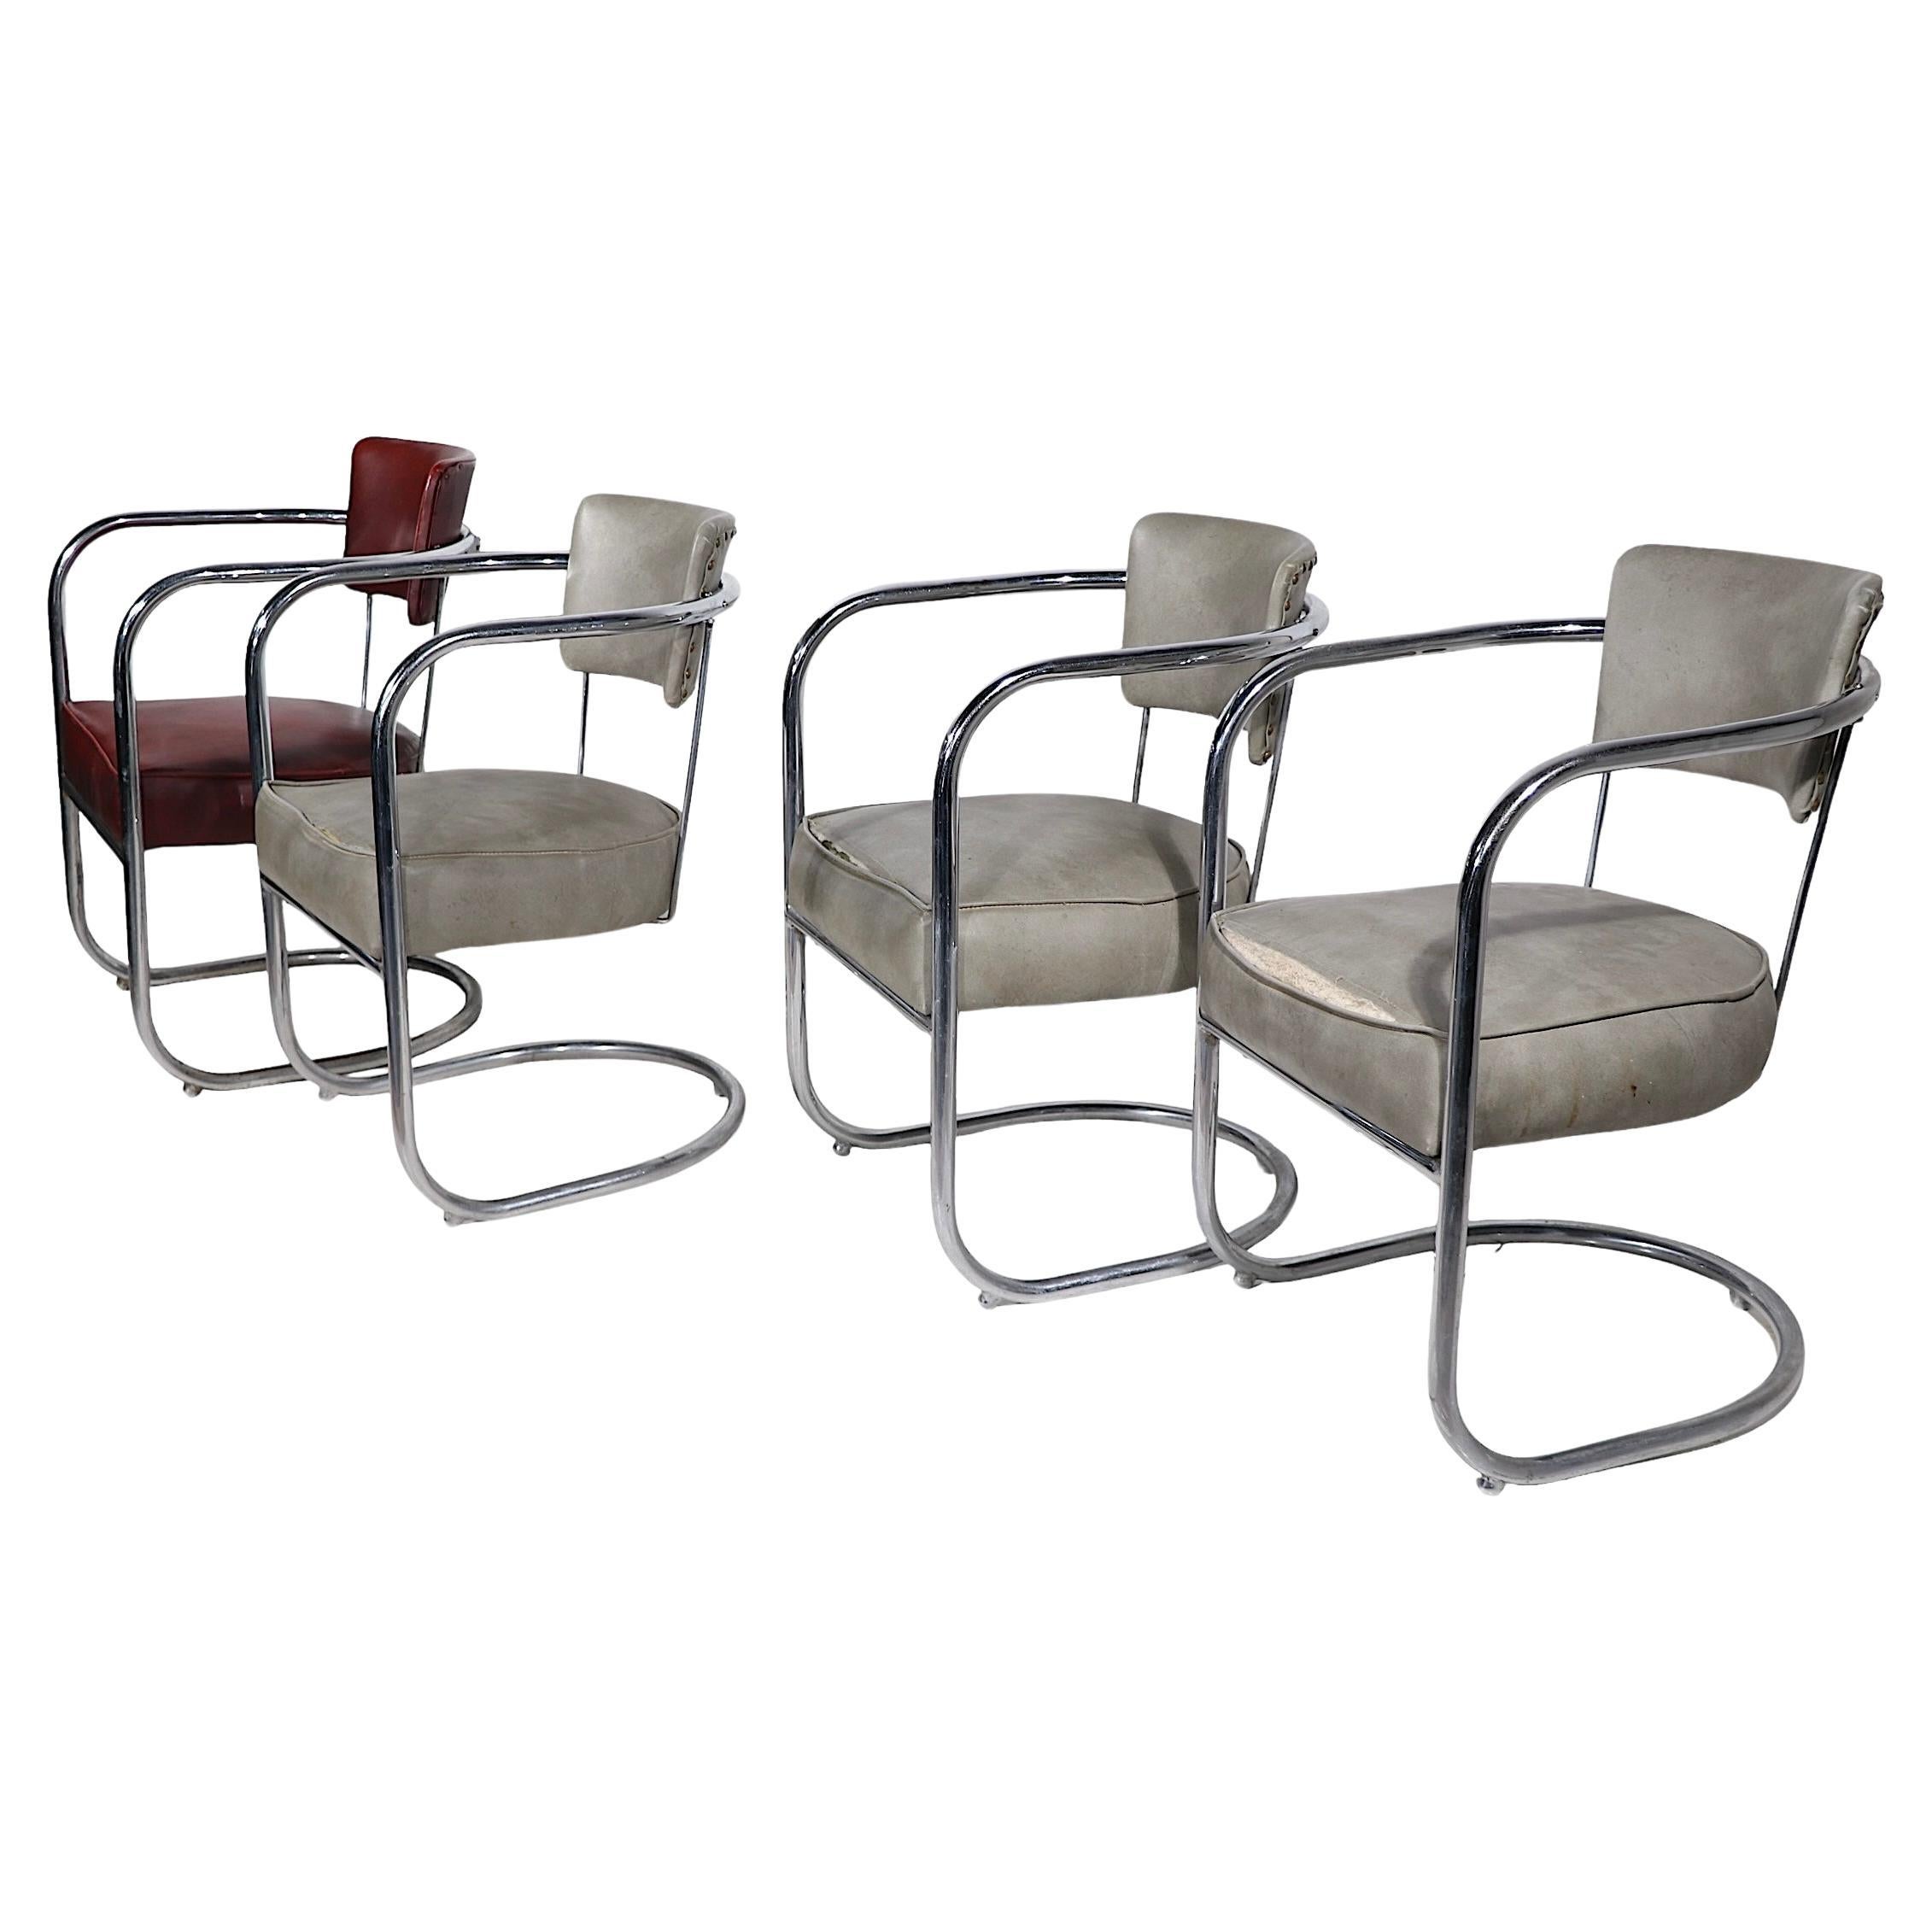 4 fauteuils Art déco chromés de Lloyd Furniture att. à Kem Weber vers les années 1930